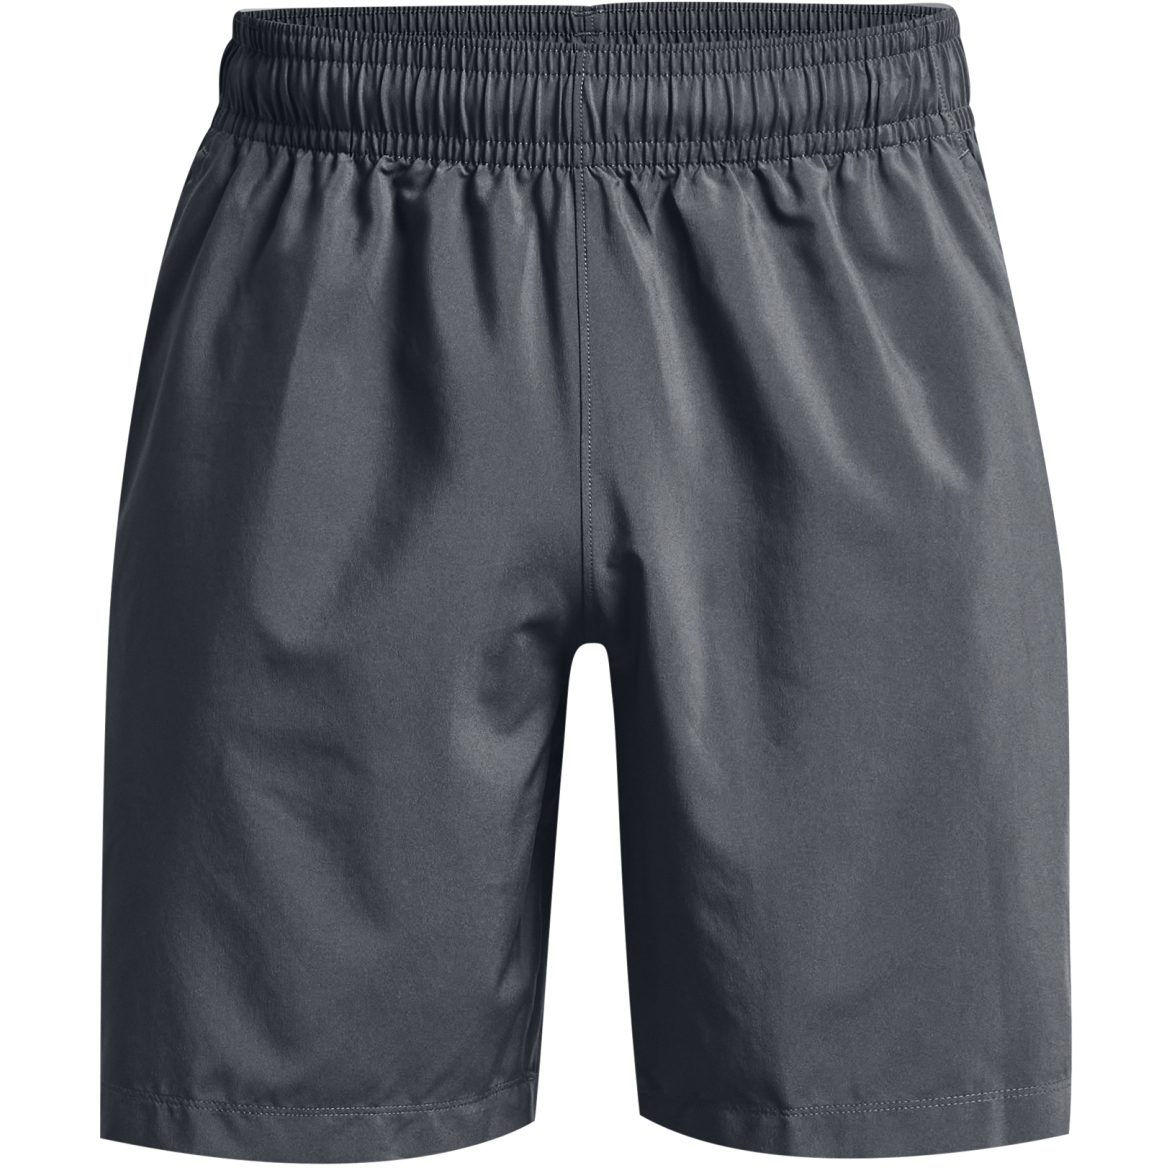 Produktbild von Under Armour Herren UA Woven Shorts mit Grafik - Pitch Gray/Black